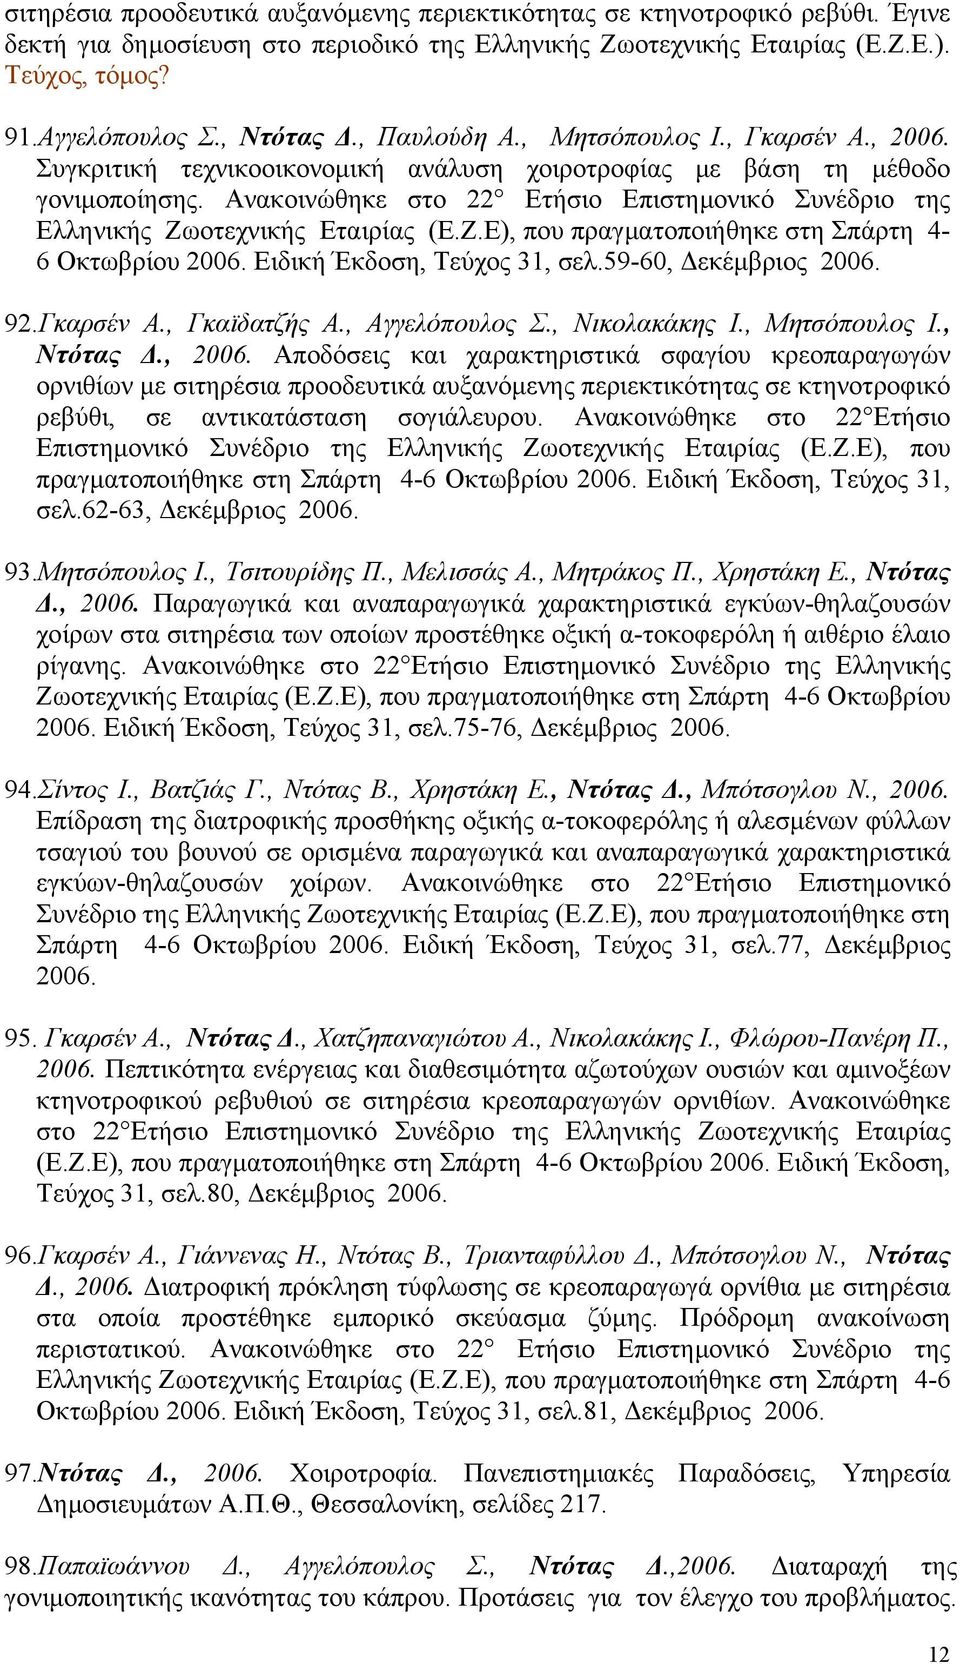 Ανακοινώθηκε στο 22 Ετήσιο Επιστημονικό Συνέδριο της Ελληνικής Ζωοτεχνικής Εταιρίας (Ε.Ζ.Ε), που πραγματοποιήθηκε στη Σπάρτη 4-6 Οκτωβρίου 2006. Ειδική Έκδοση, Τεύχος 31, σελ.59-60, Δεκέμβριος 2006.